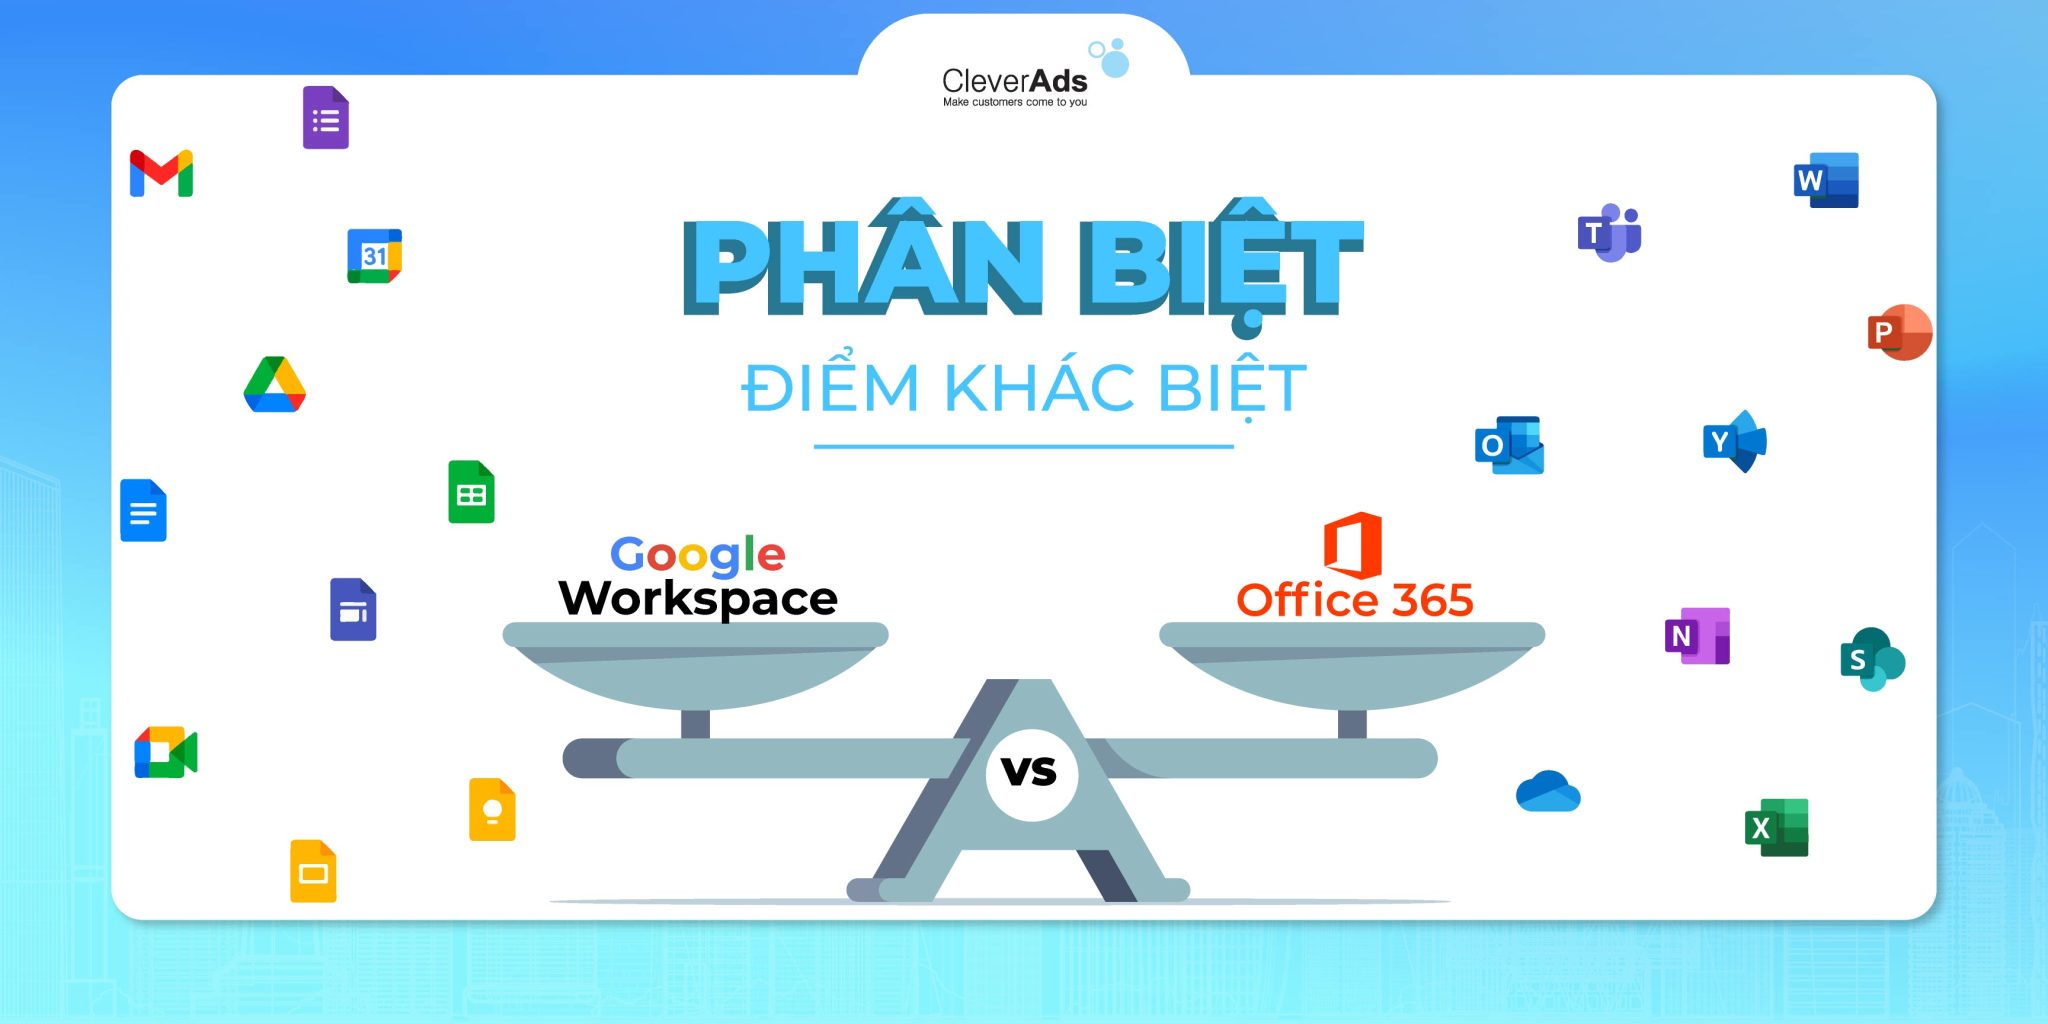 Điểm khác biệt giữa Google Workspace và Office 365